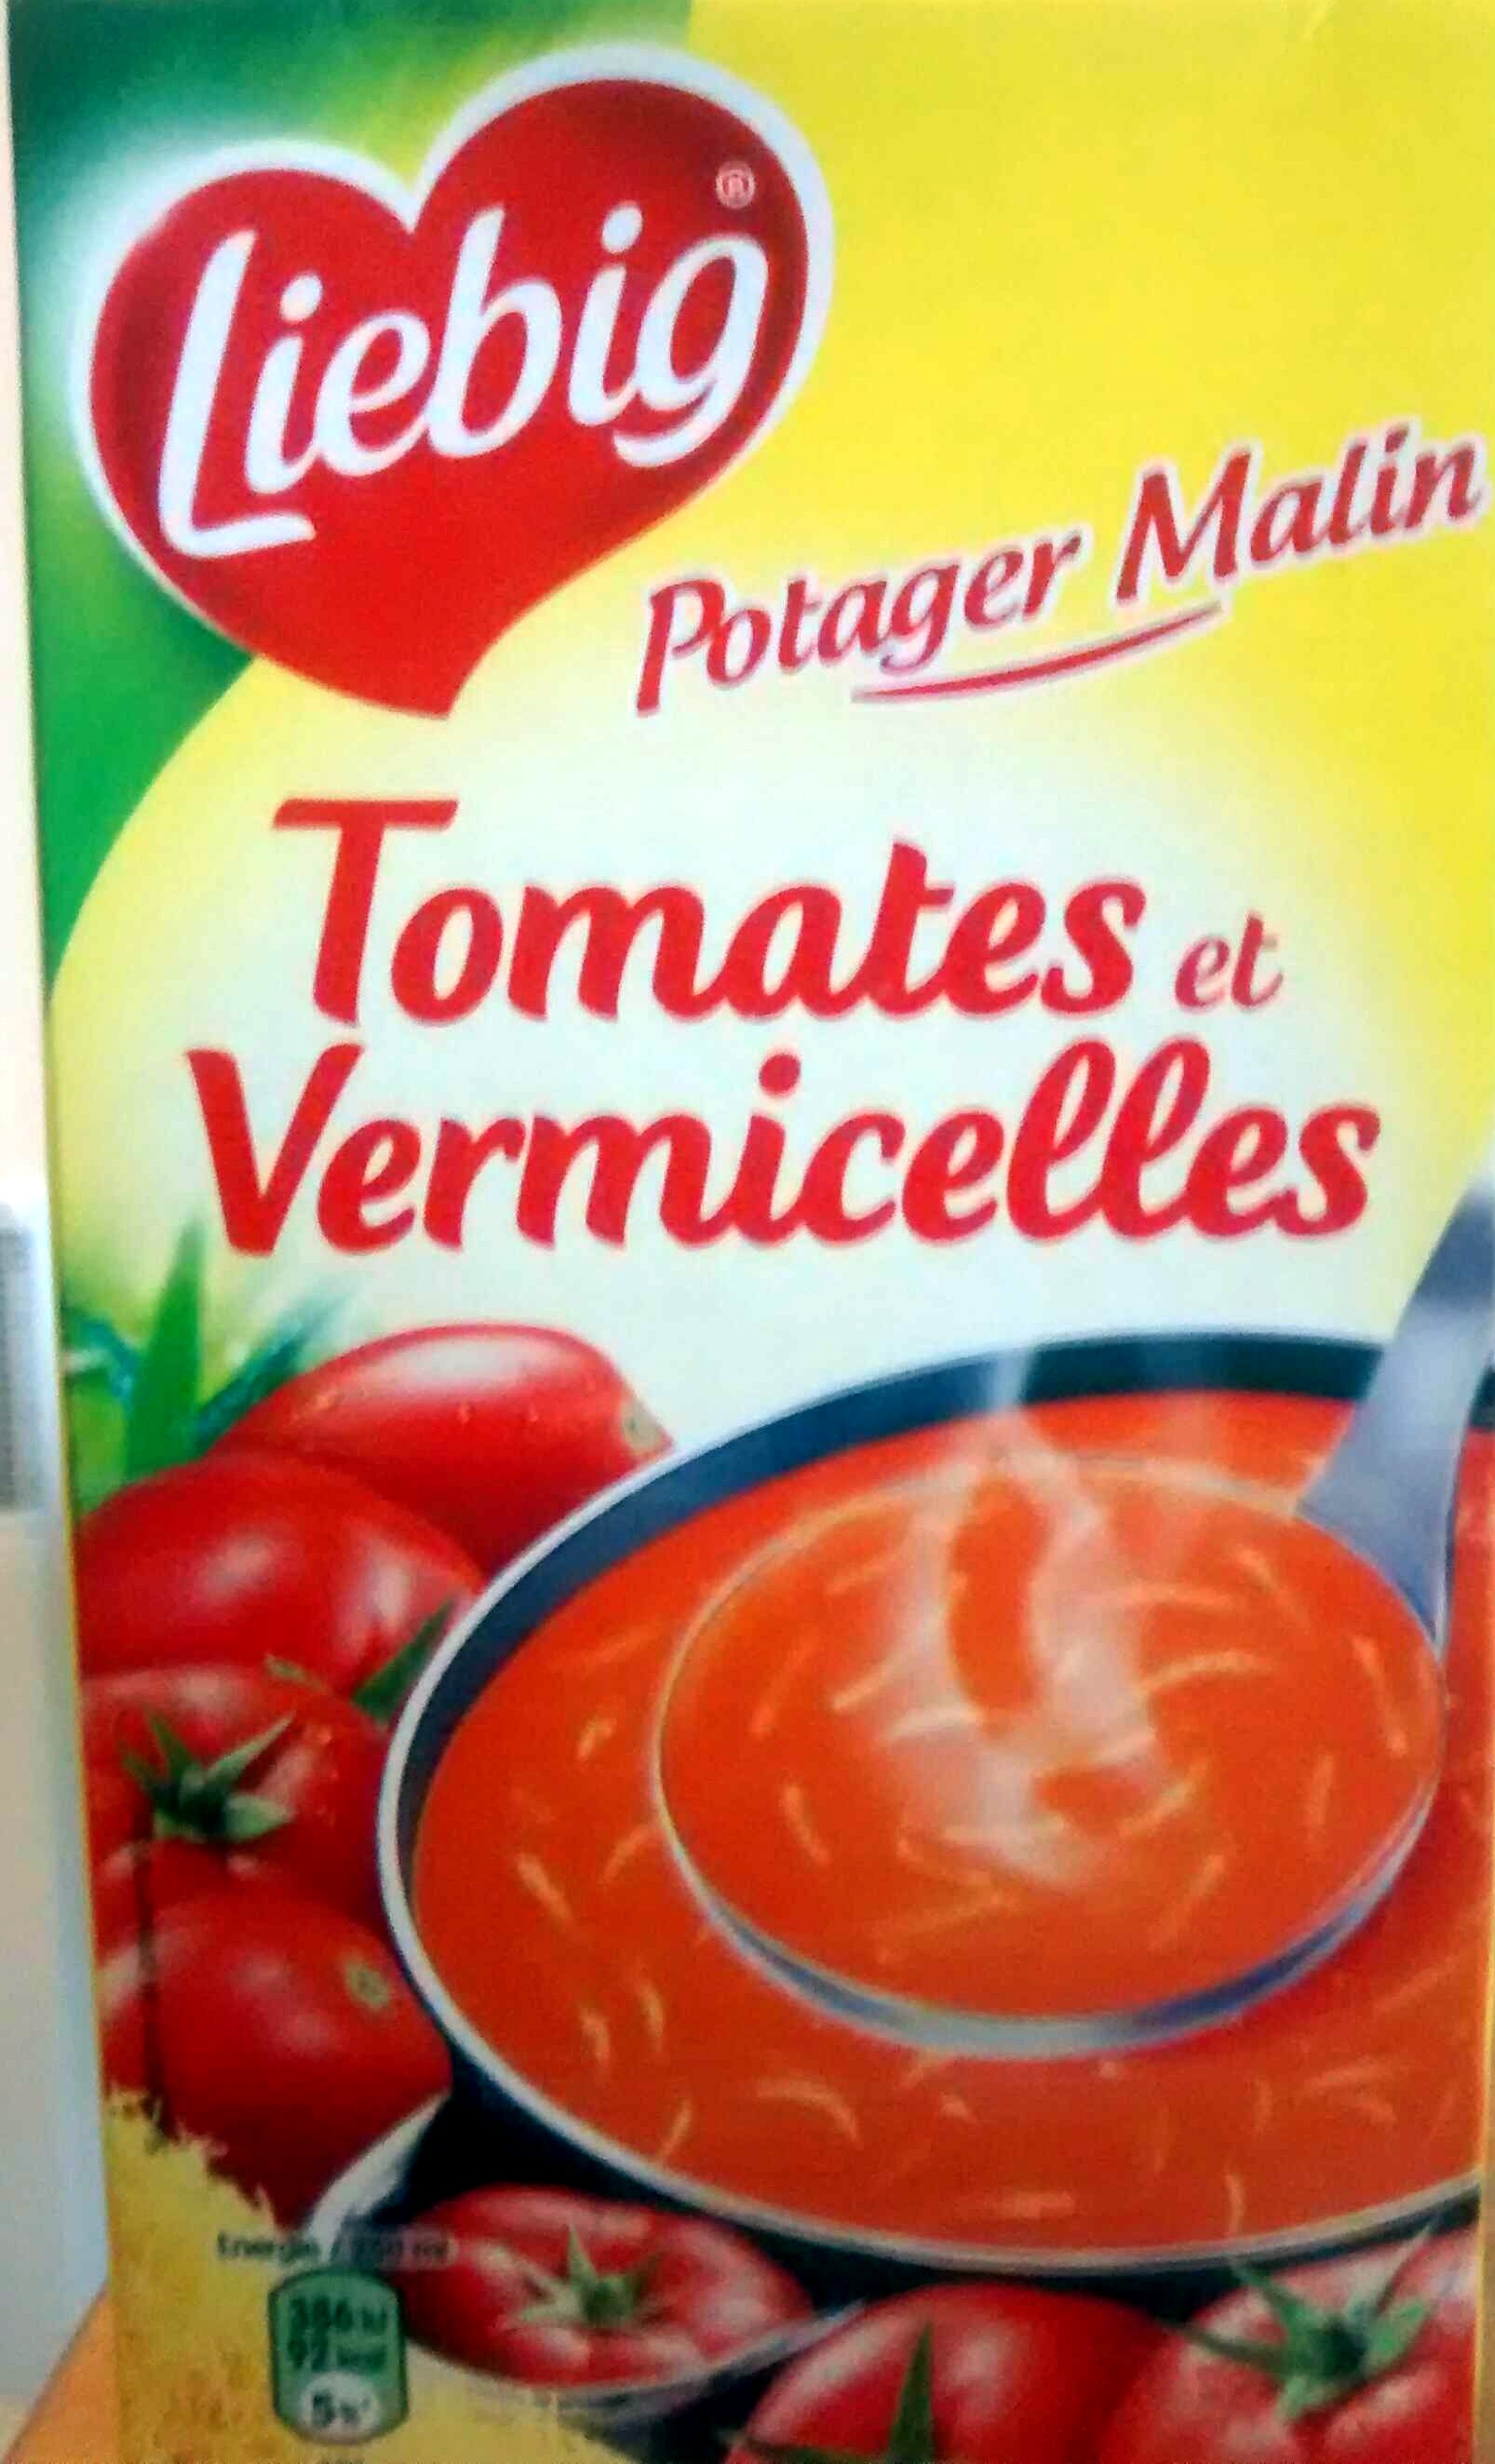 Potager Malin Tomates et Vermicelles - Produit